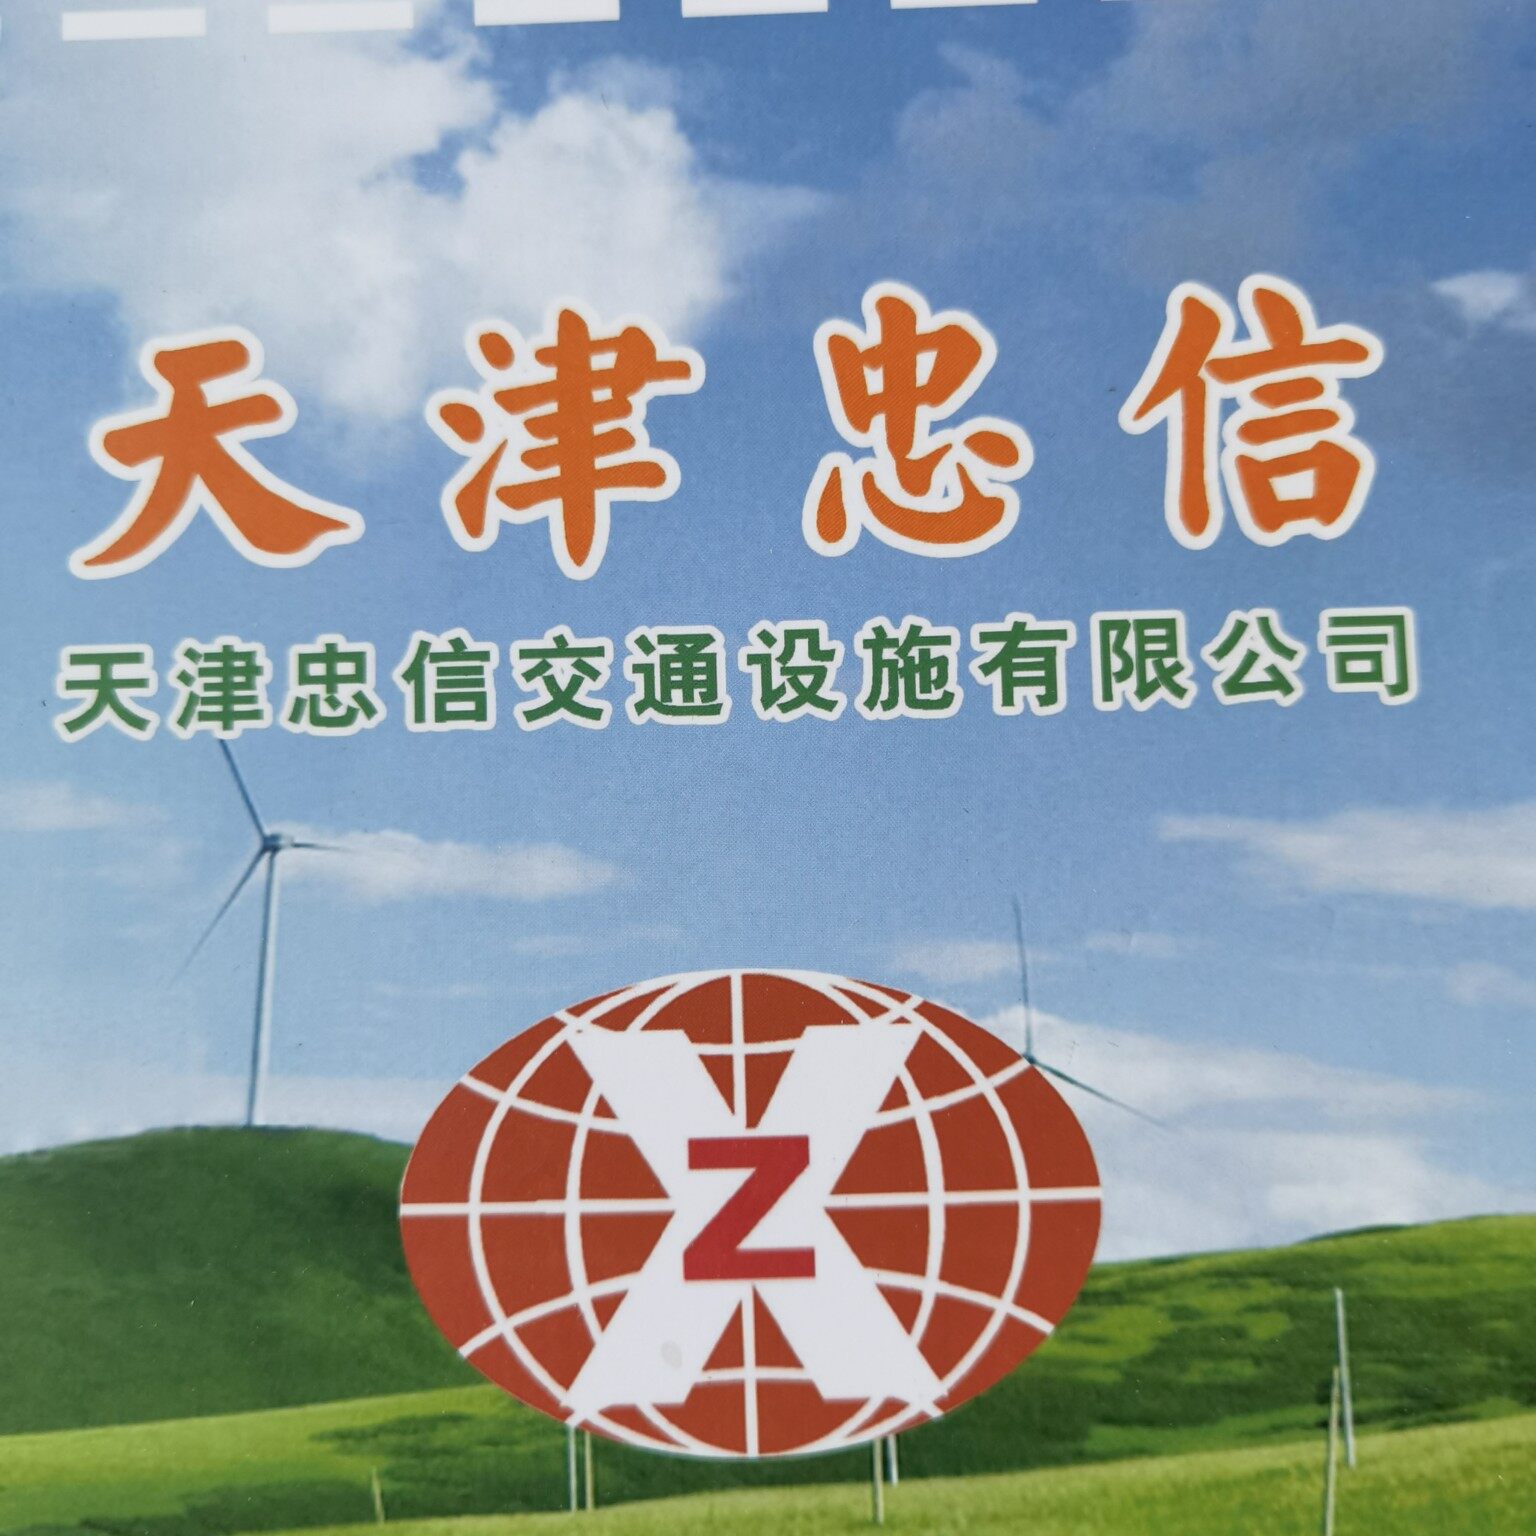 天津忠信交通设施有限公司logo